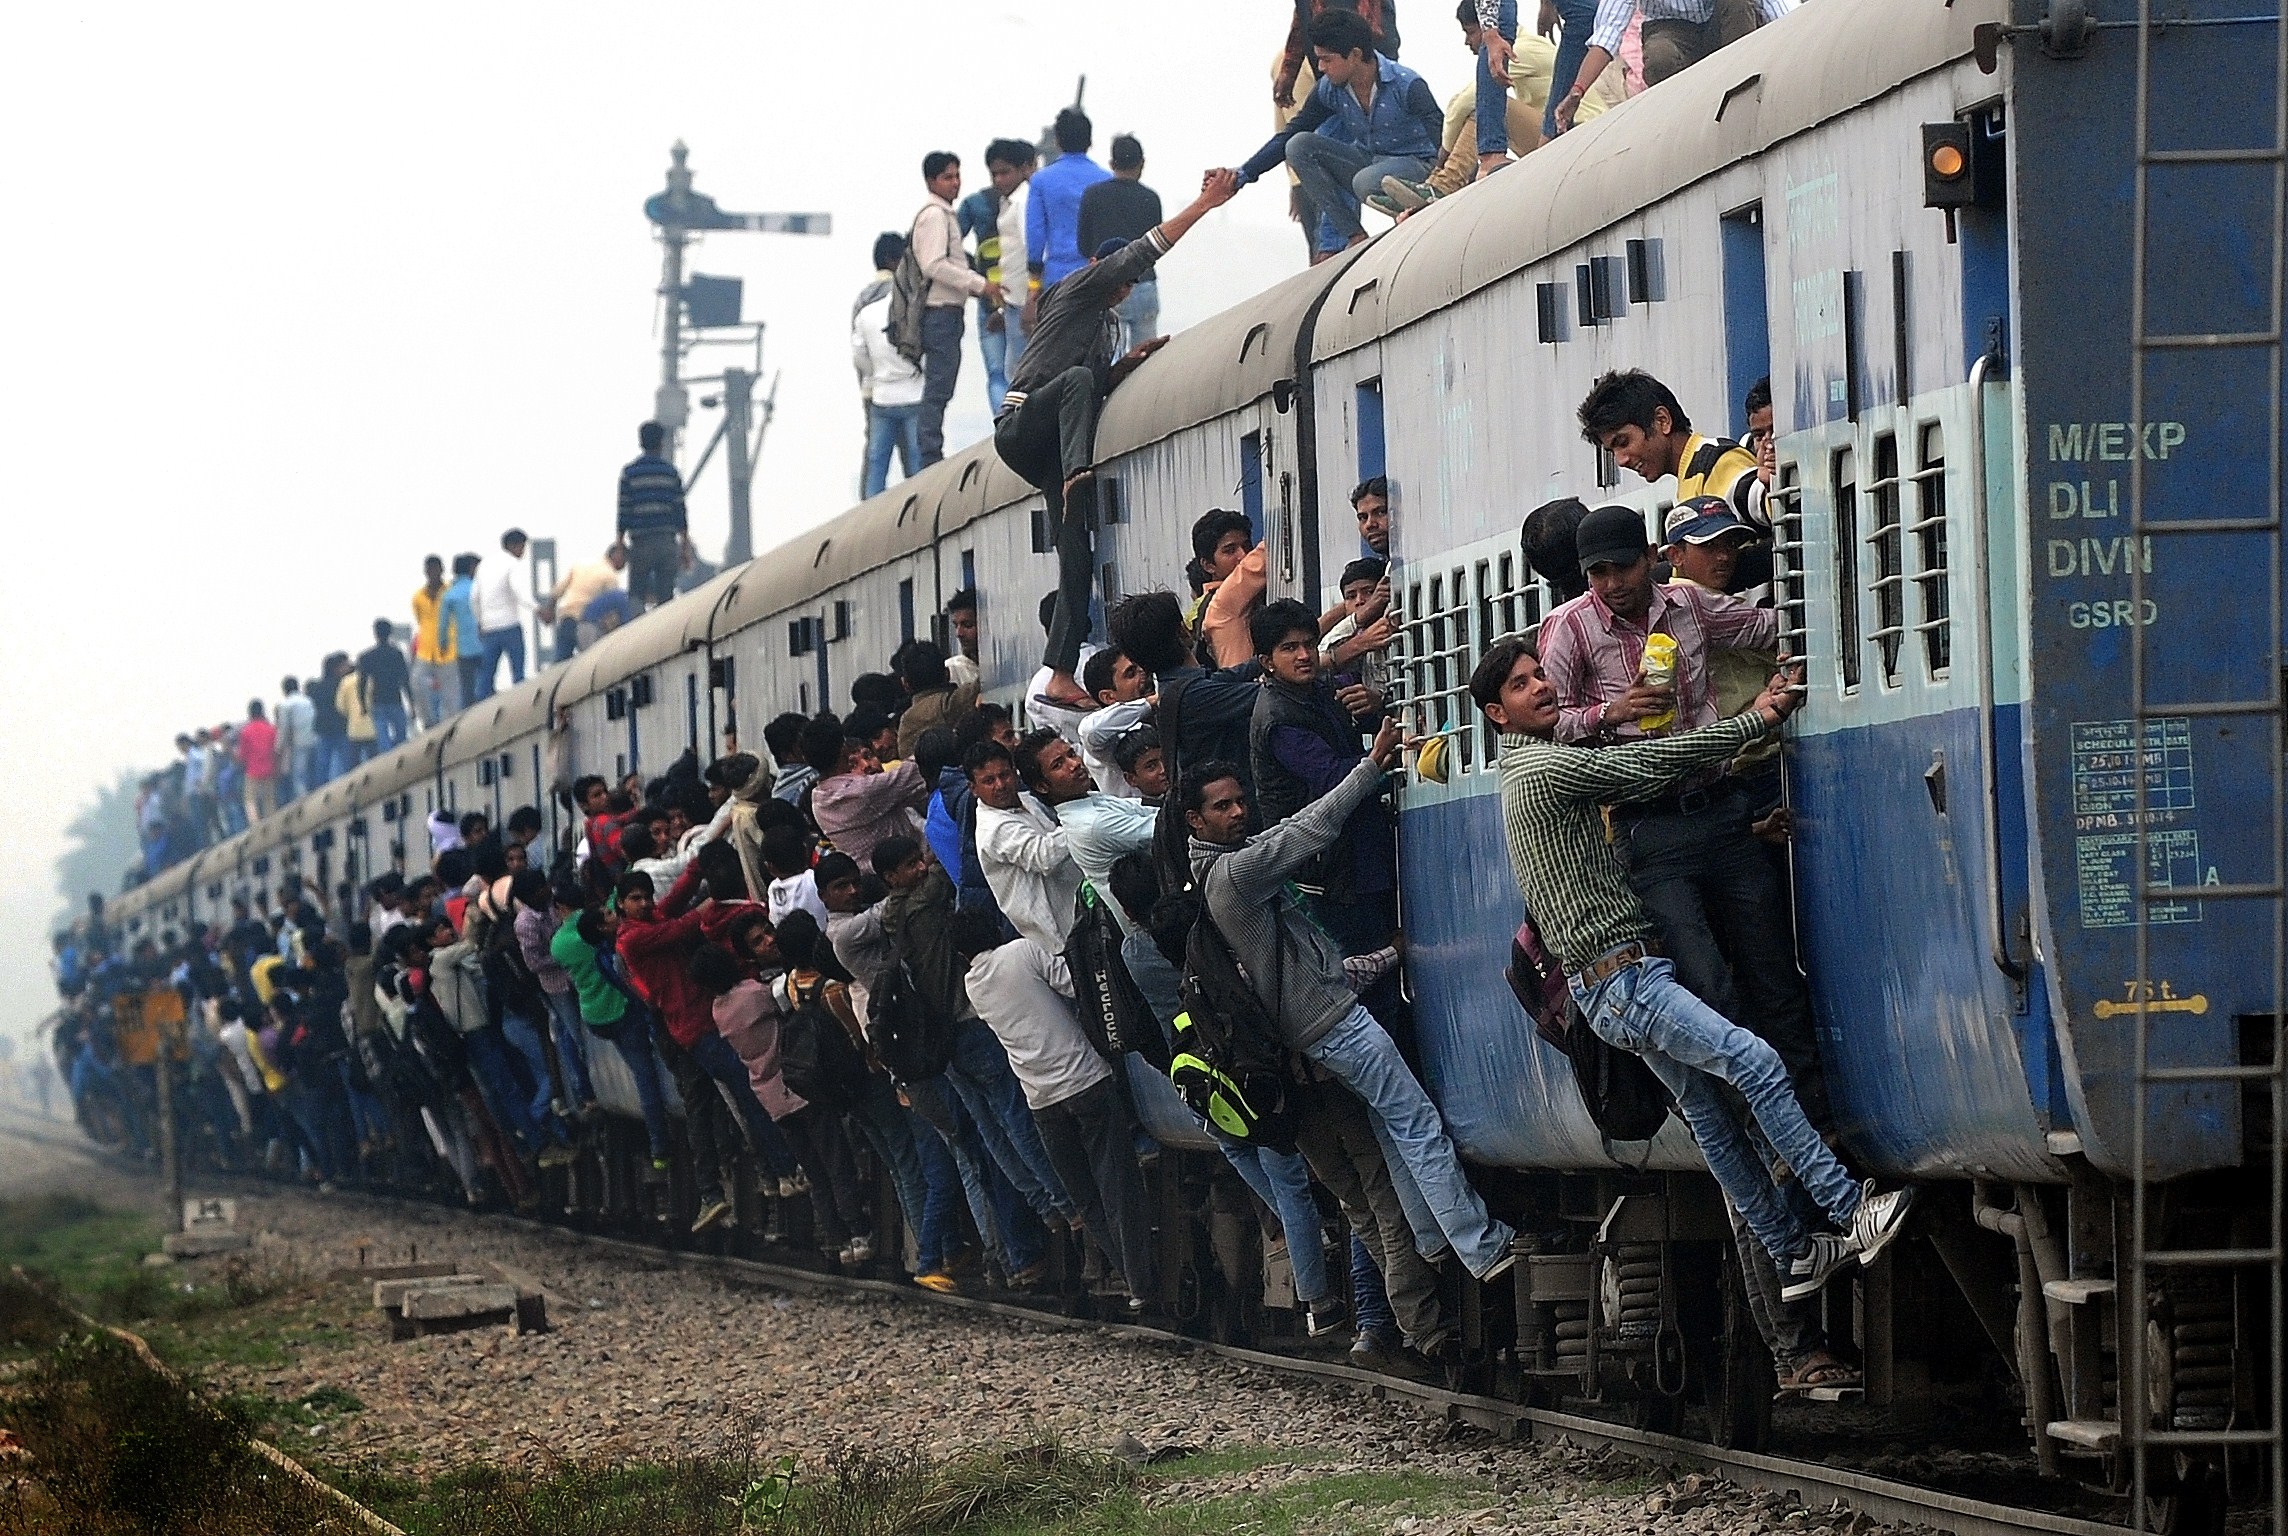 Поезд в Индии